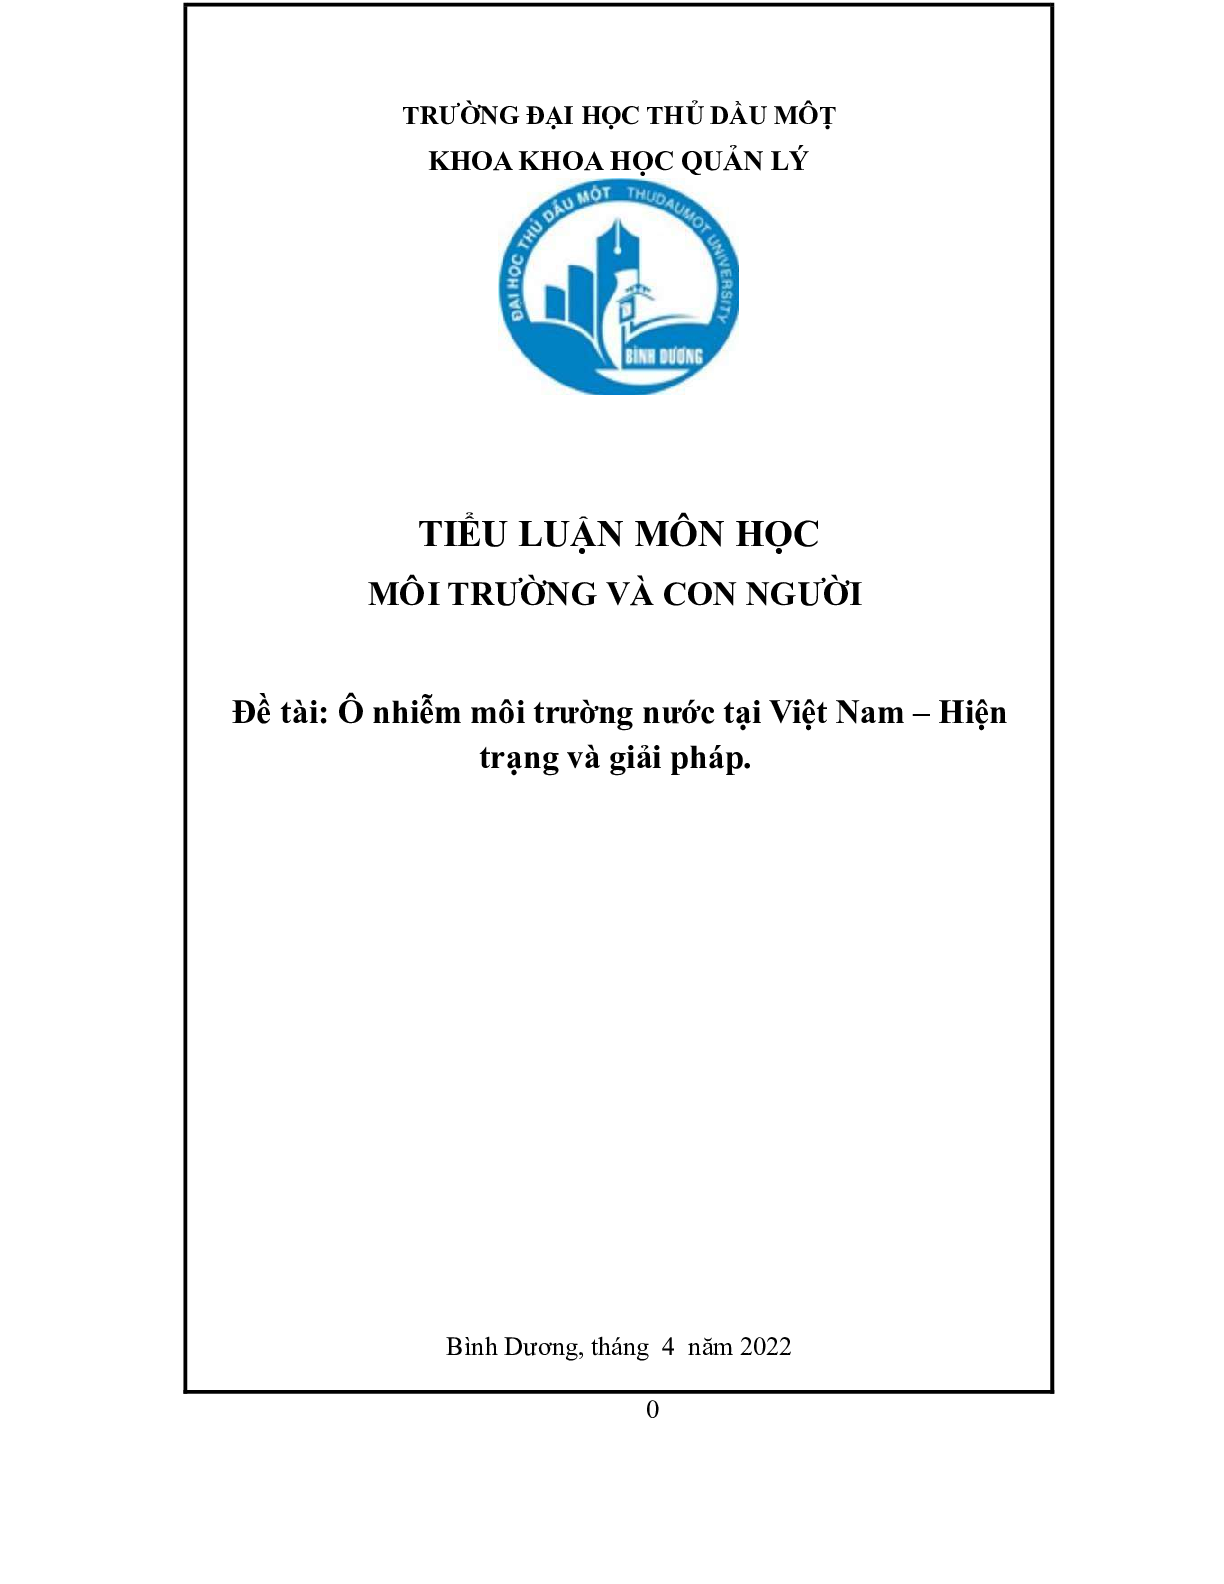 Ô nhiễm môi trường nước tại Việt Nam | Tiểu luận môn Môi trường và con người | Trường Đại học Thủ Dầu Một (trang 1)